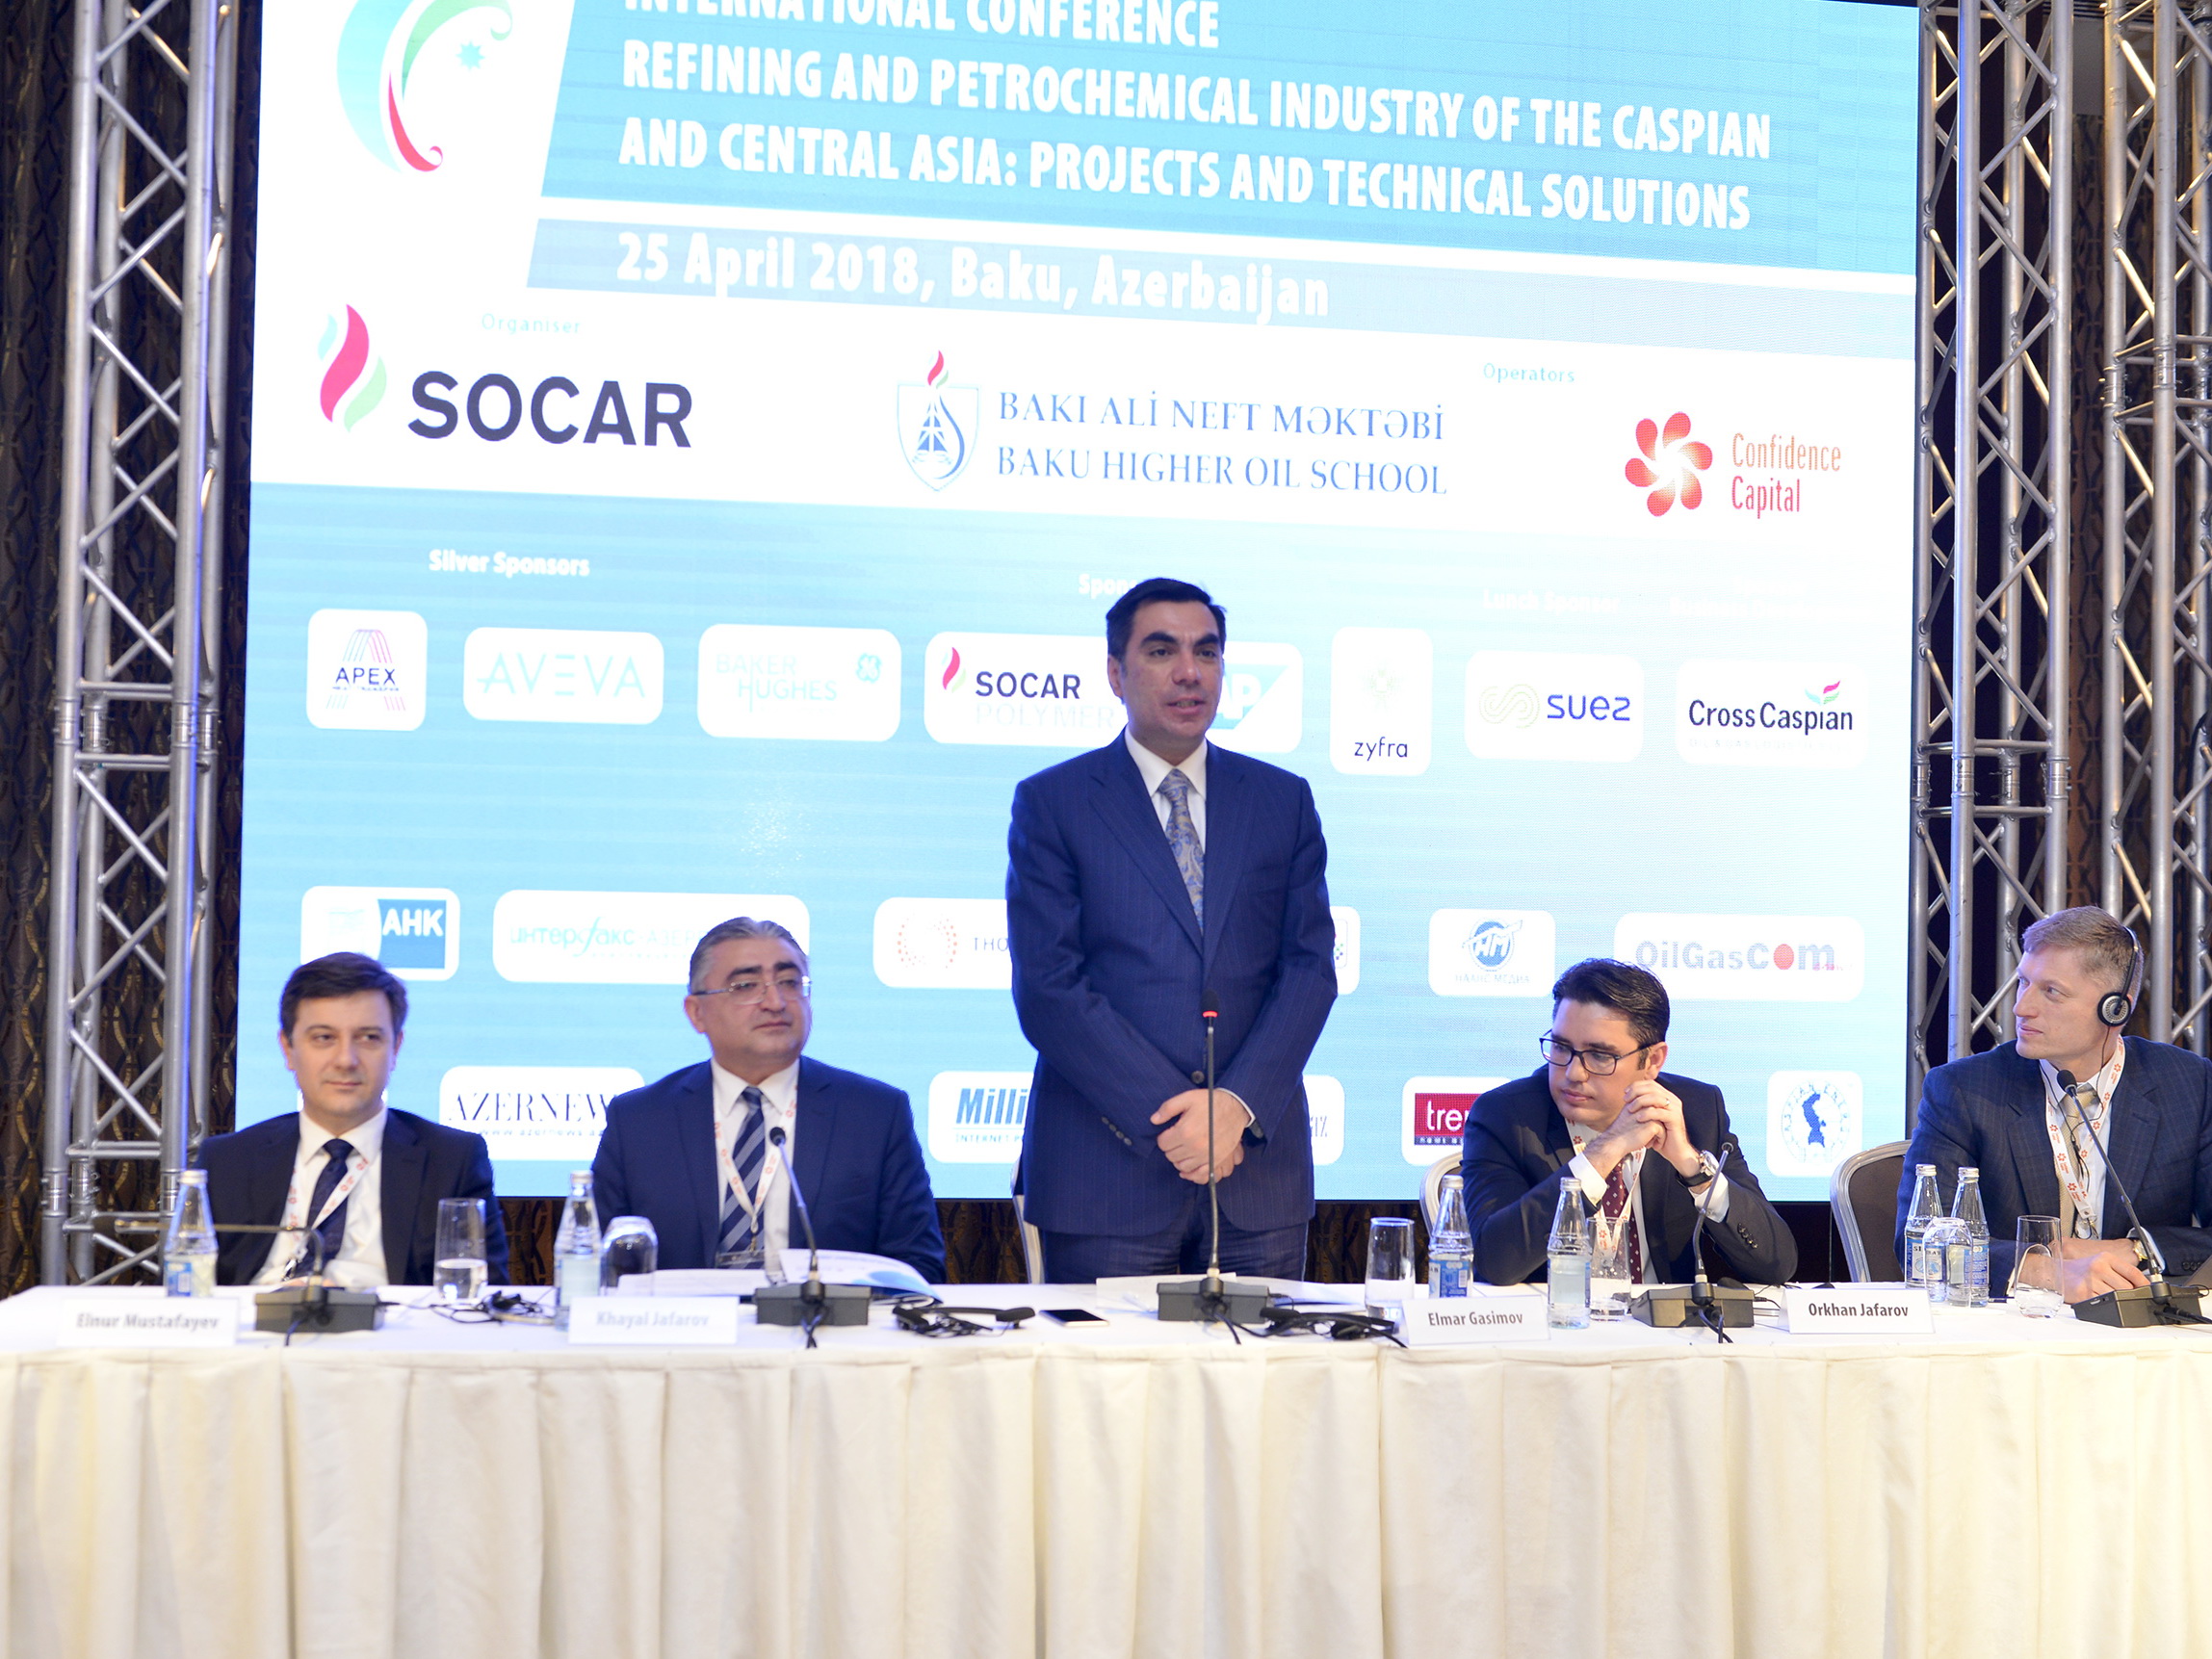 БВШН завершает III Международный форум SOCAR конференцией